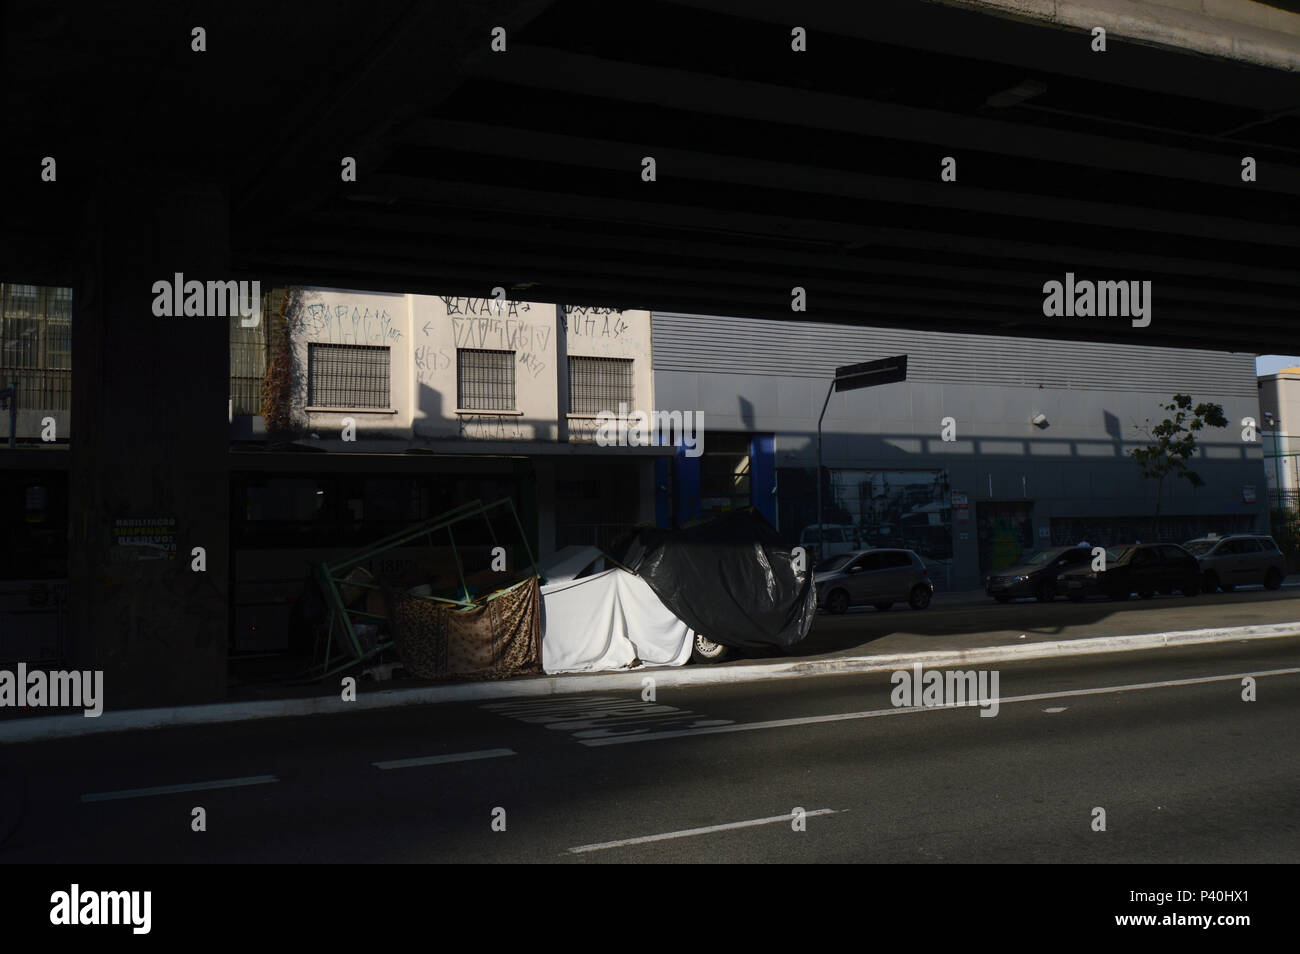 Pobreza. Casa de papelão de morador de rua embaixo do Minhocão. Avenida General Olímpio da Silveira, parte de baixo do Minhocão (Elevado João Goulart). Stock Photo